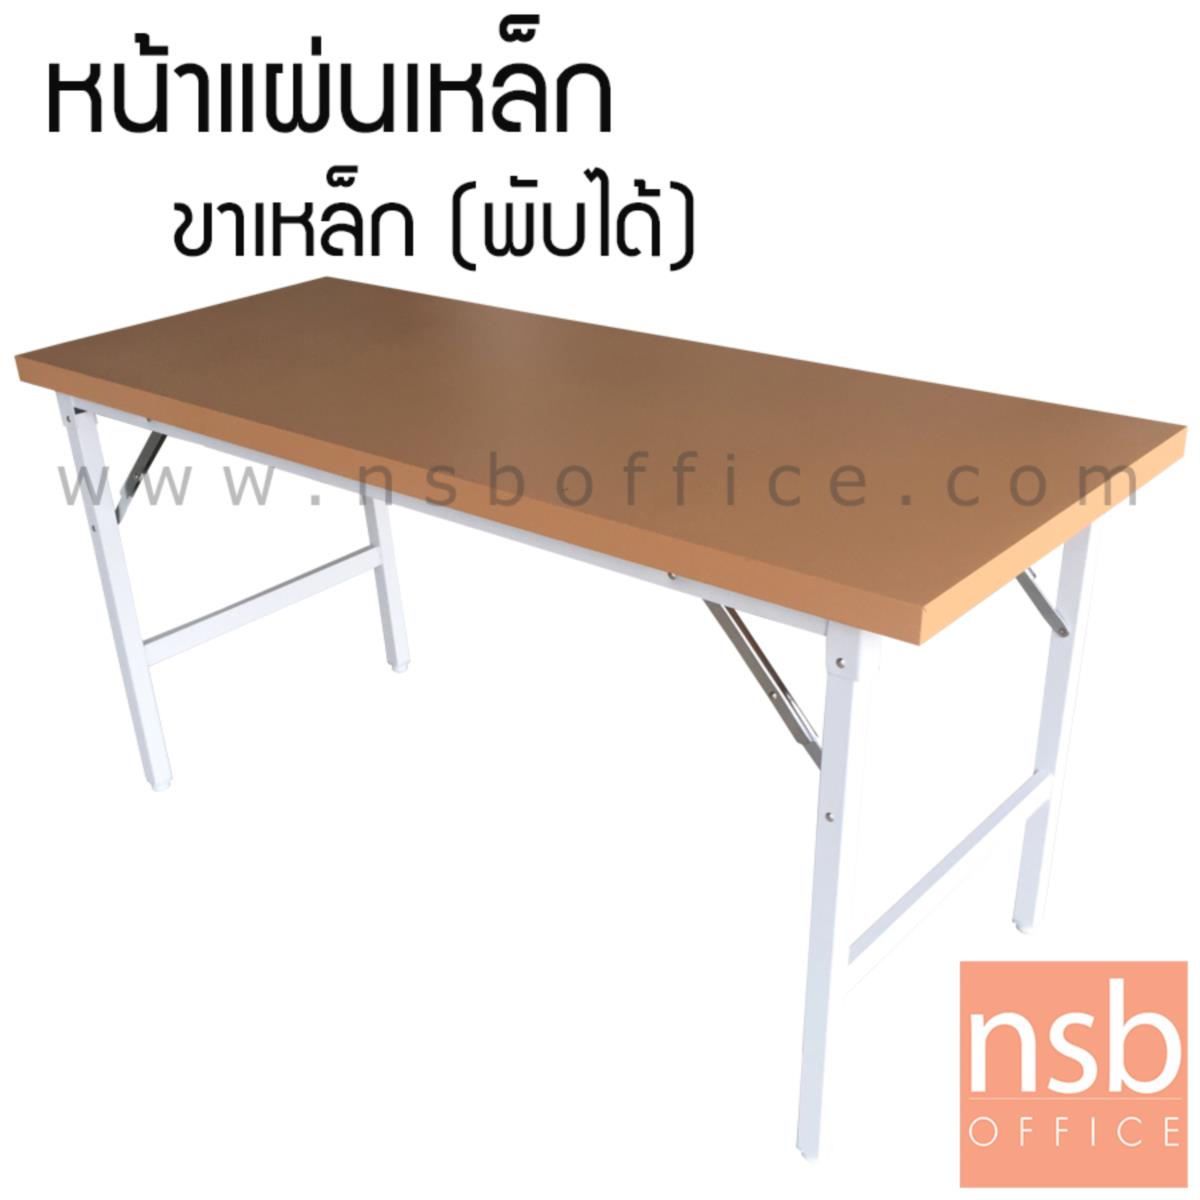 E31A029:โต๊ะพับหน้าเหล็ก  รุ่น FGS-60150-180 150W ,180W cm. ขาเหล็กชุบโครเมียม  